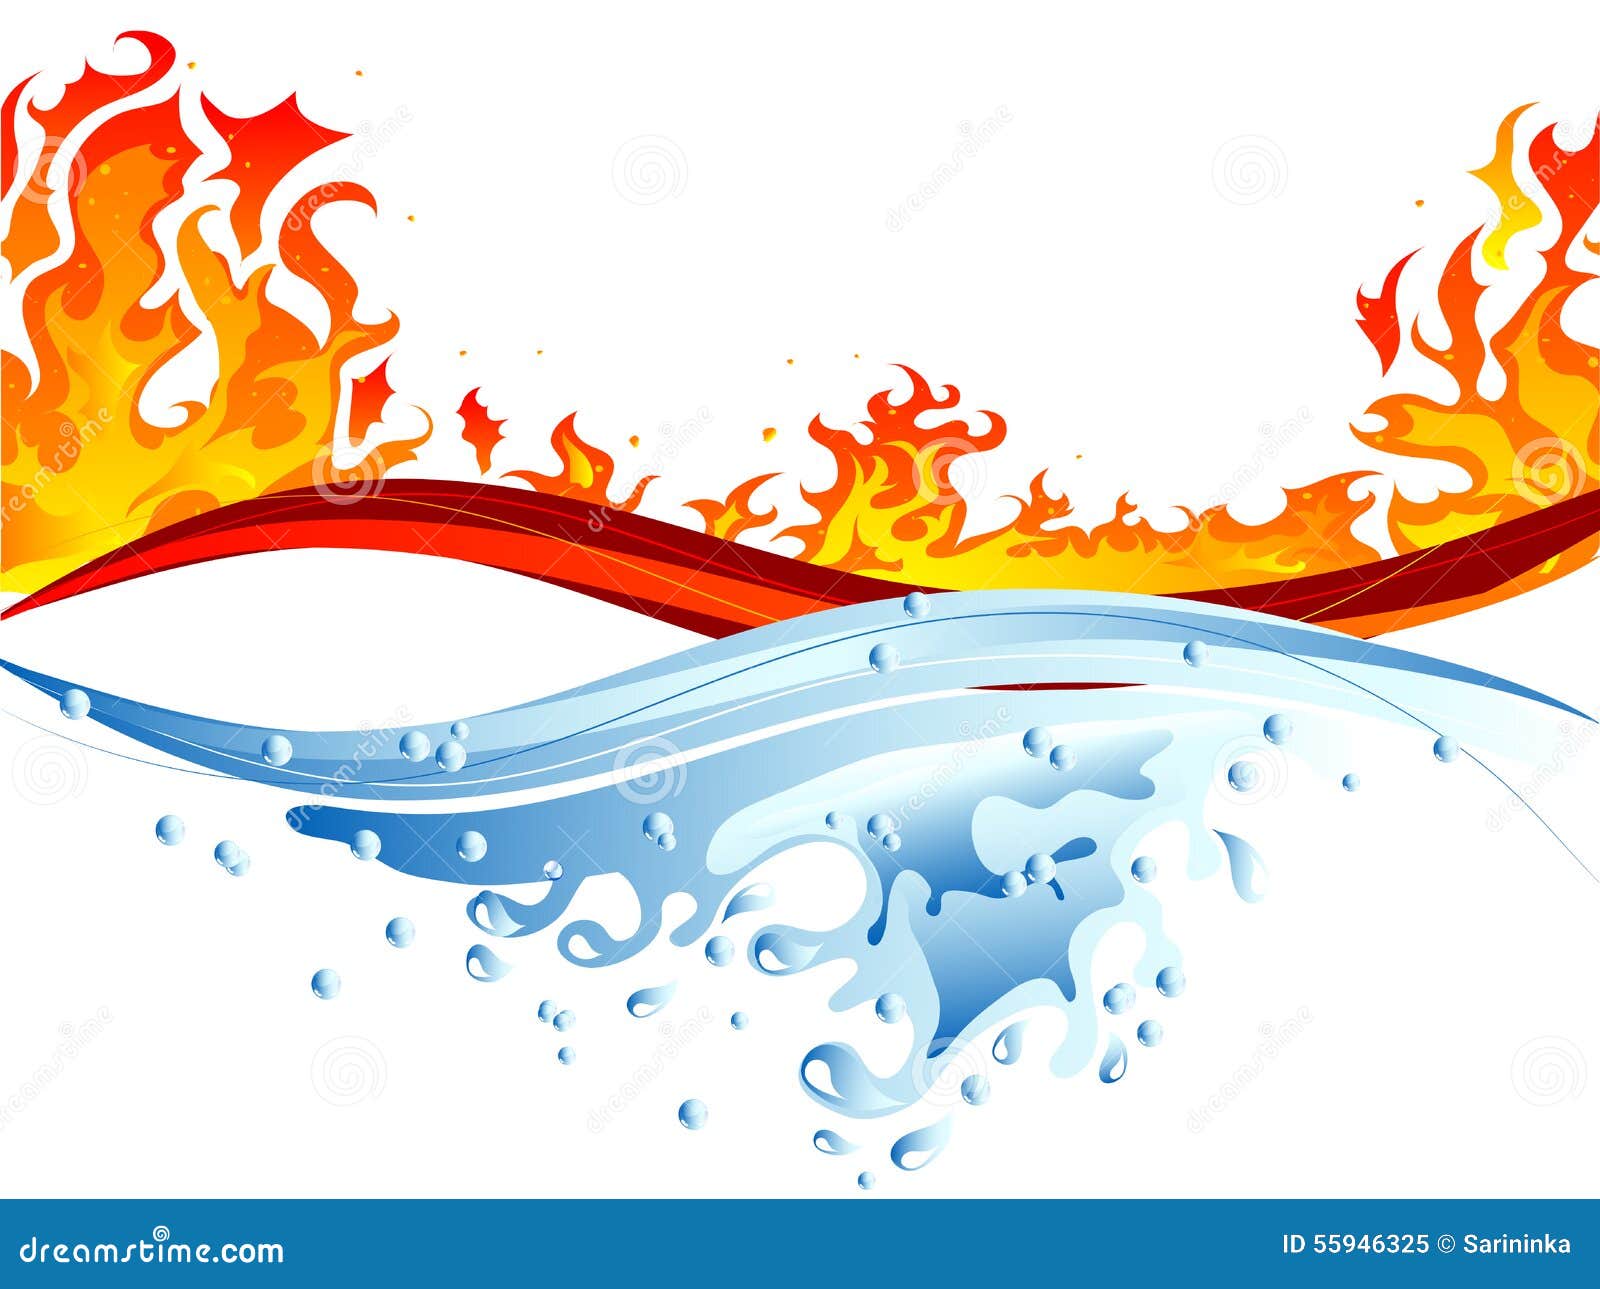 conjunto de fogo e água. chamas de diferentes formas. diferentes gotas de  água. ilustração vetorial dos desenhos animados isolada no fundo branco.  7979776 Vetor no Vecteezy